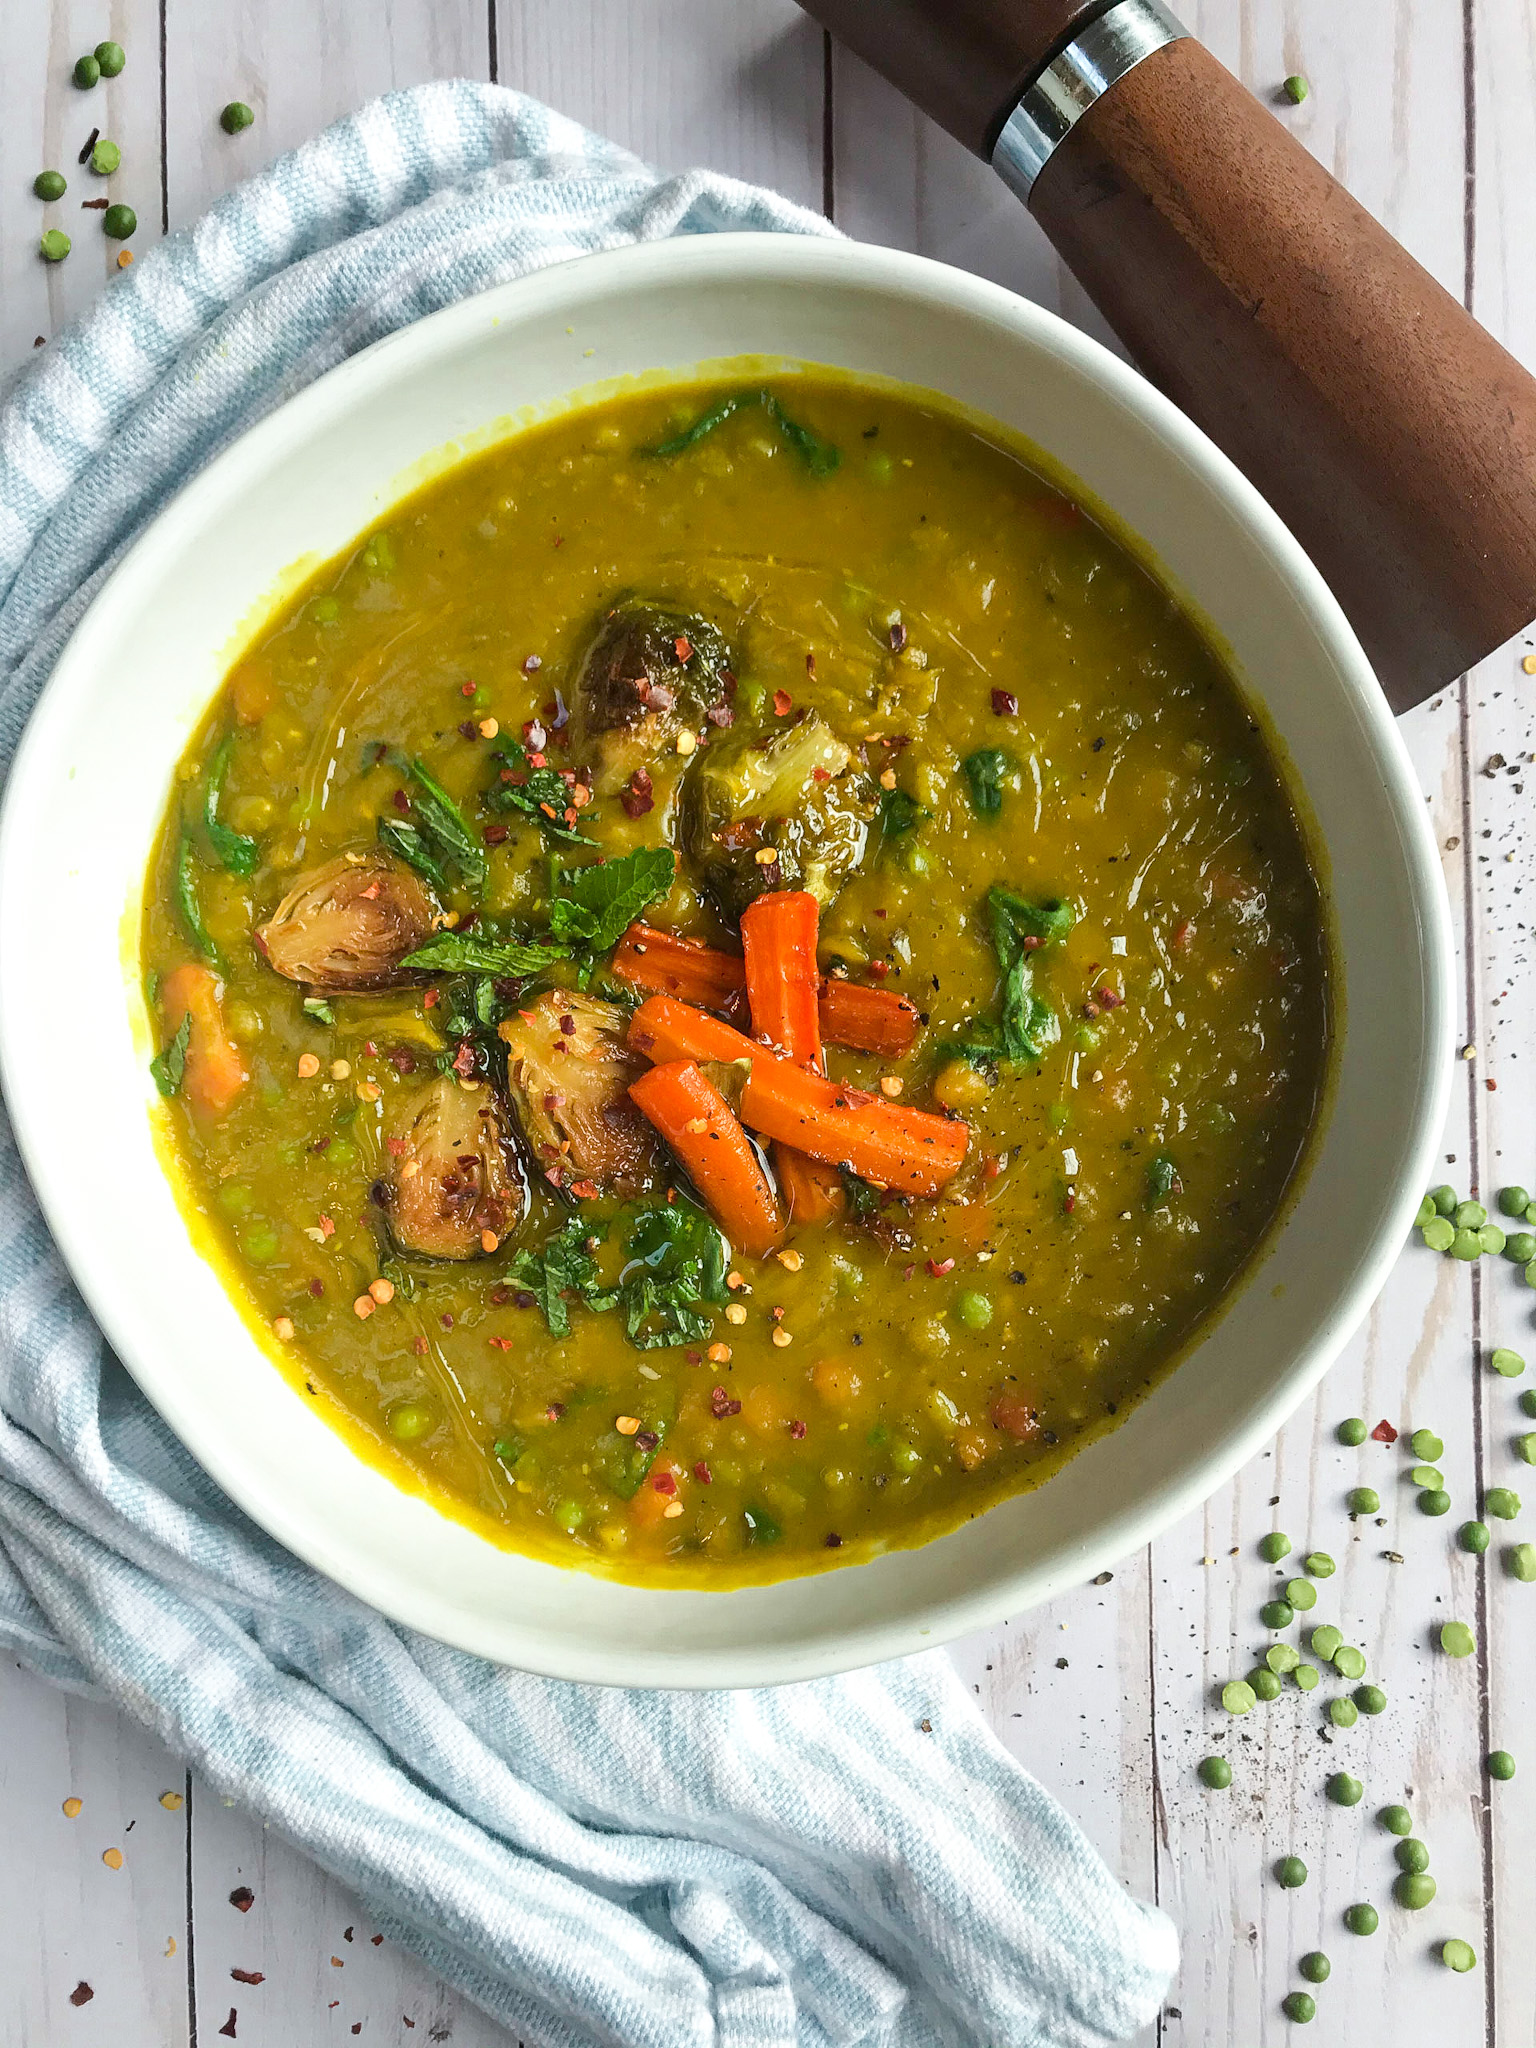 https://betterfoodguru.com/wp-content/uploads/2022/04/Vegan-Split-Pea-Soup.jpg